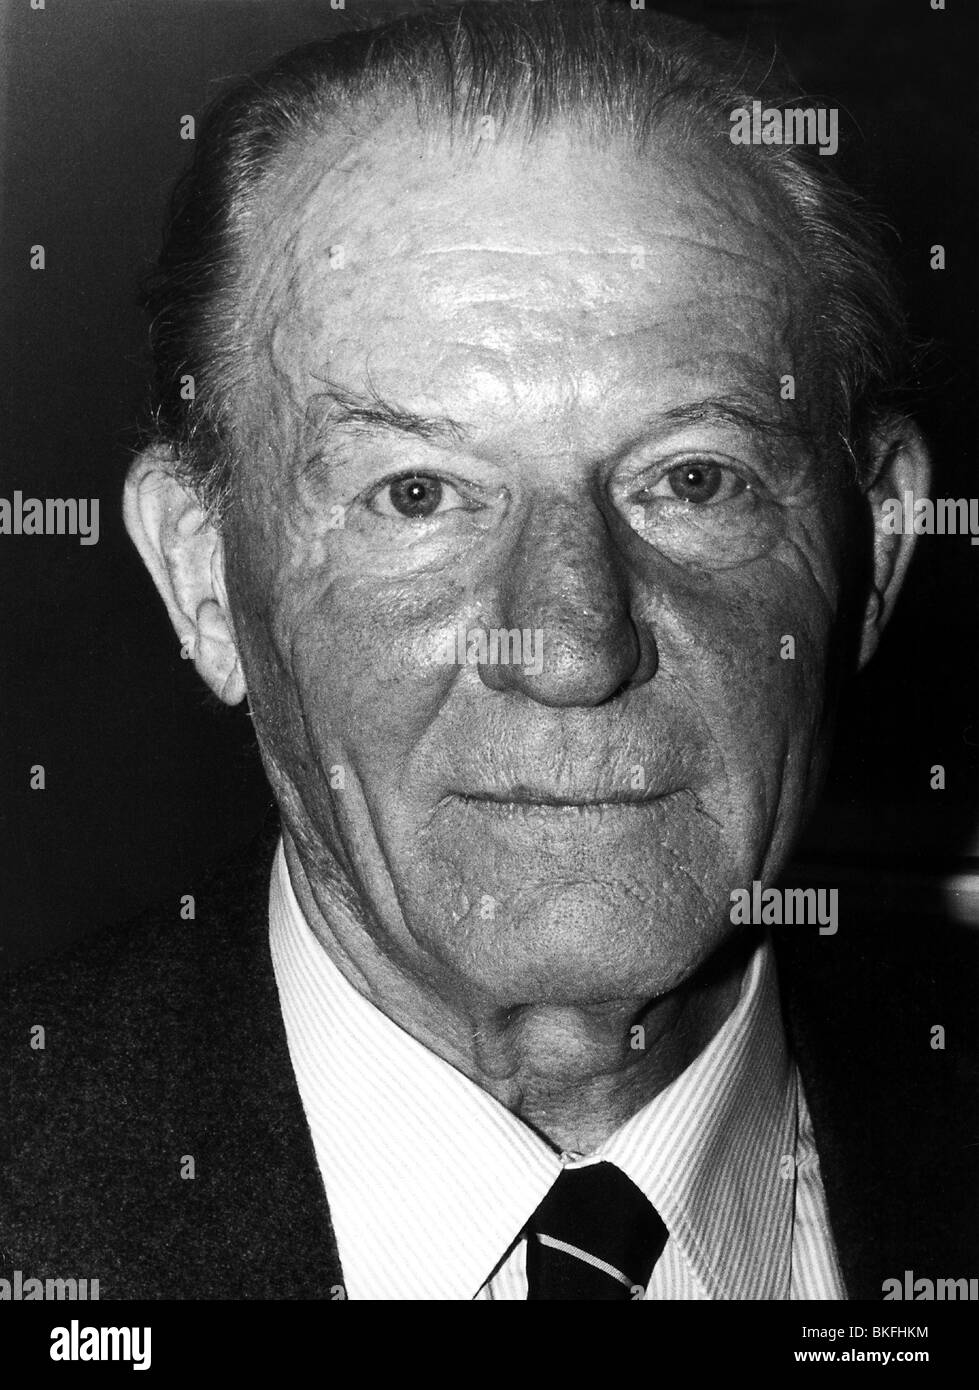 Zahn, Peter von, 29.1.1913 - 26.7.2001, German journalist, portrait, 1978, , Stock Photo